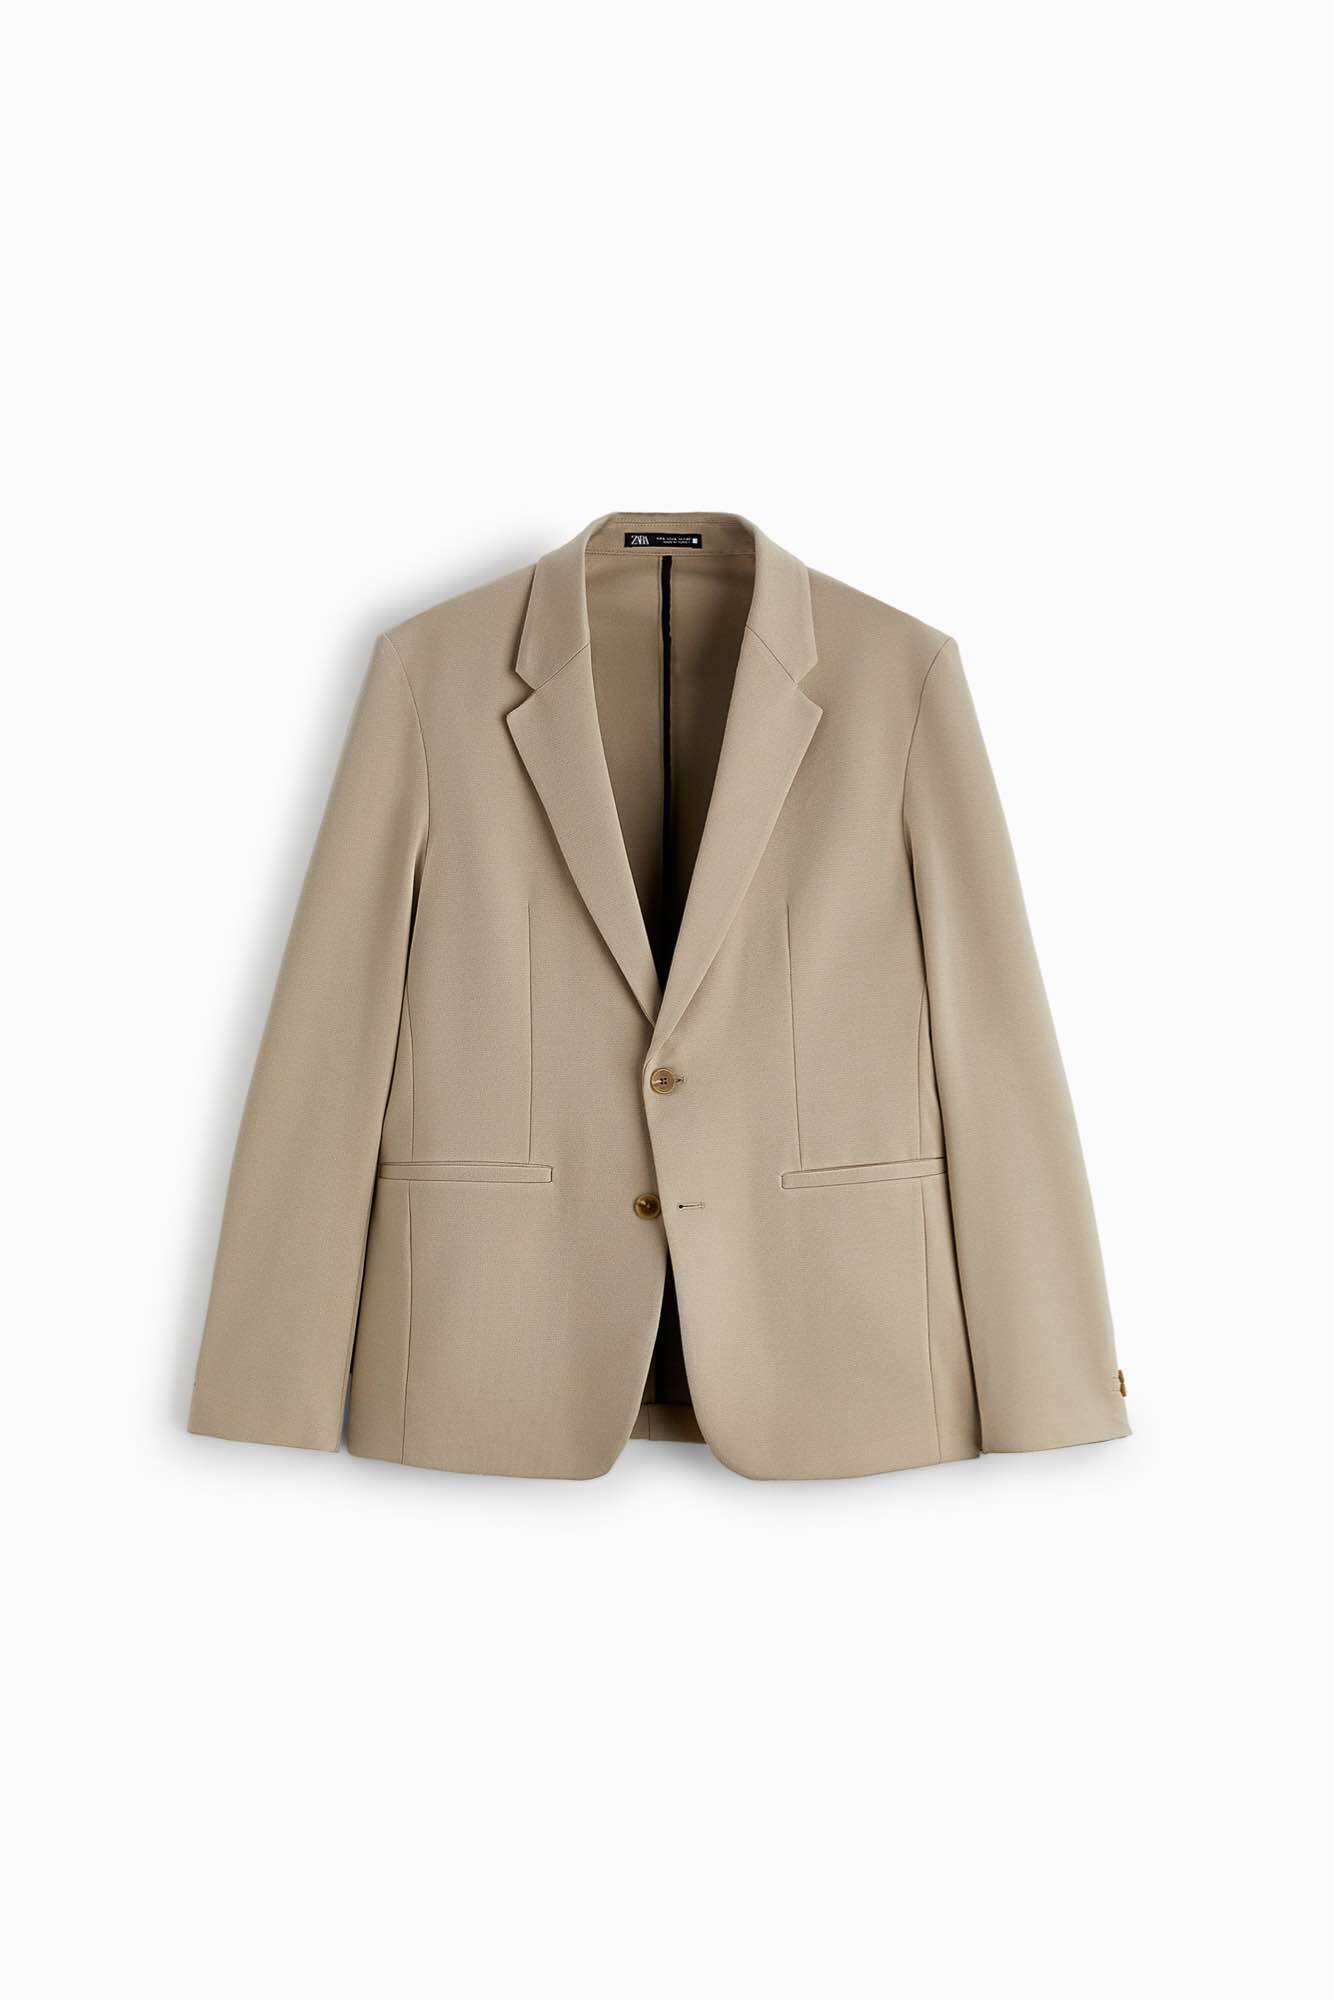 Áo khoác blazer Zara authentic COMFORT size M